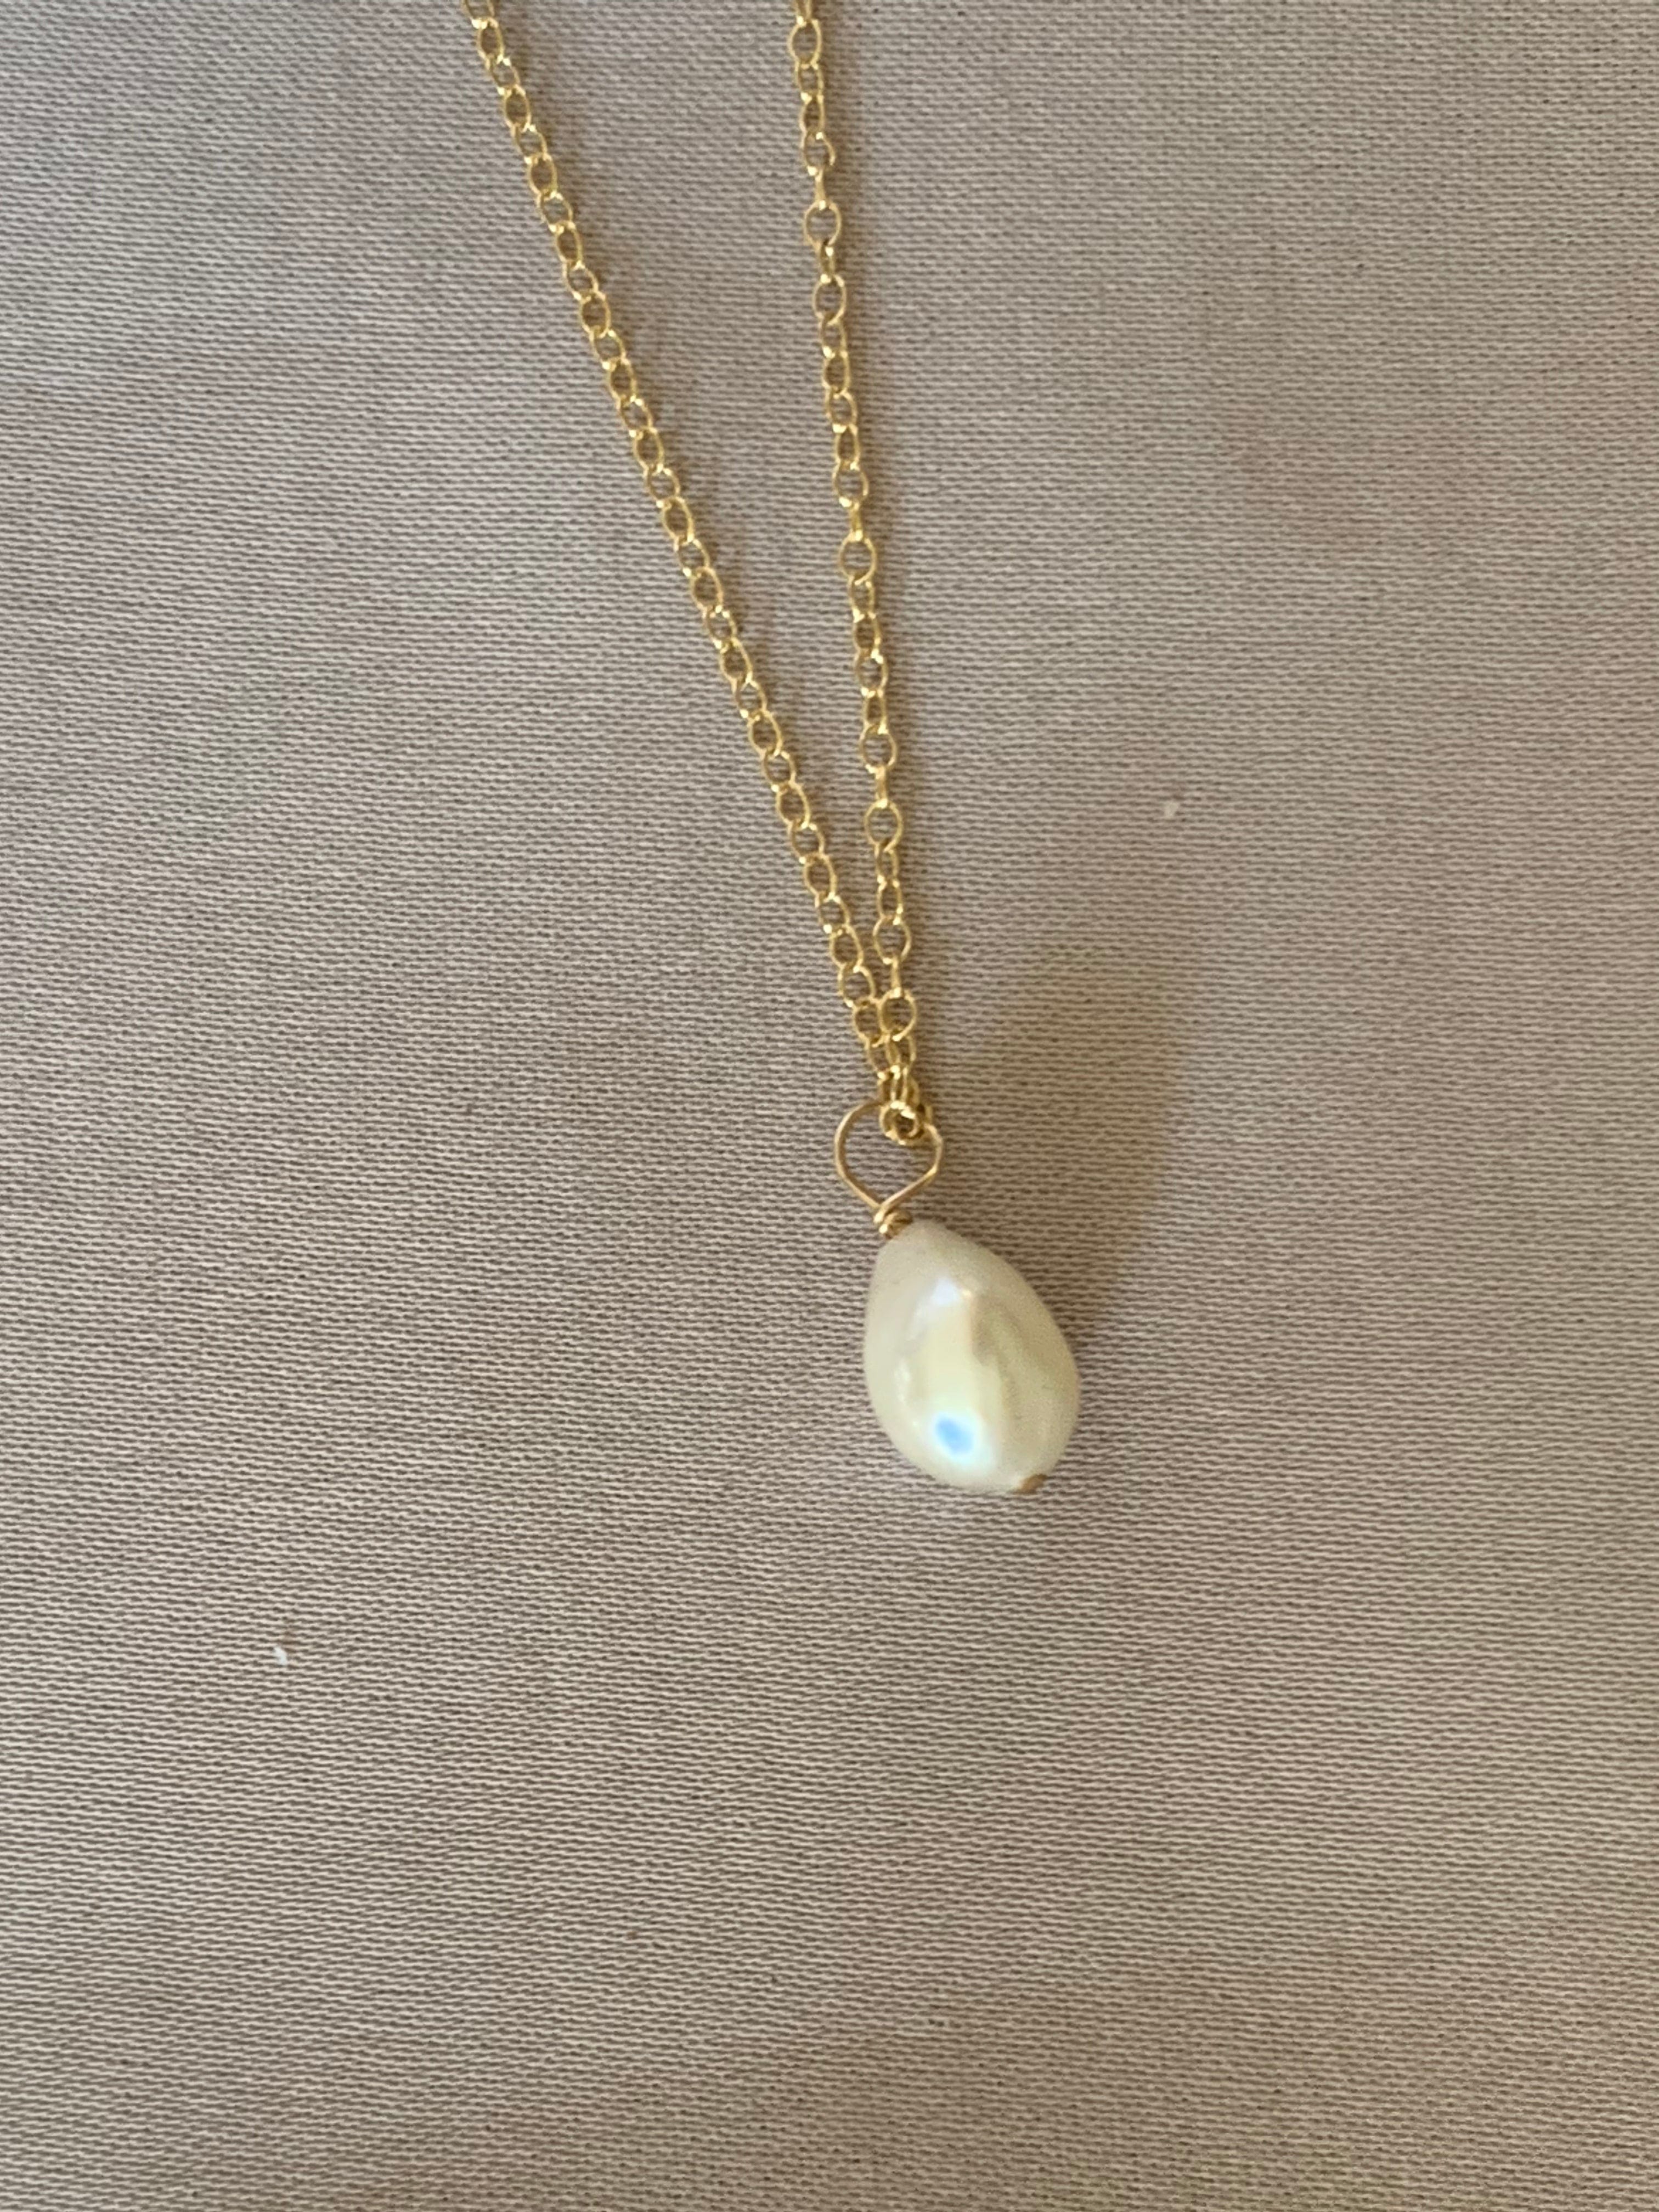 Pearl drop necklace